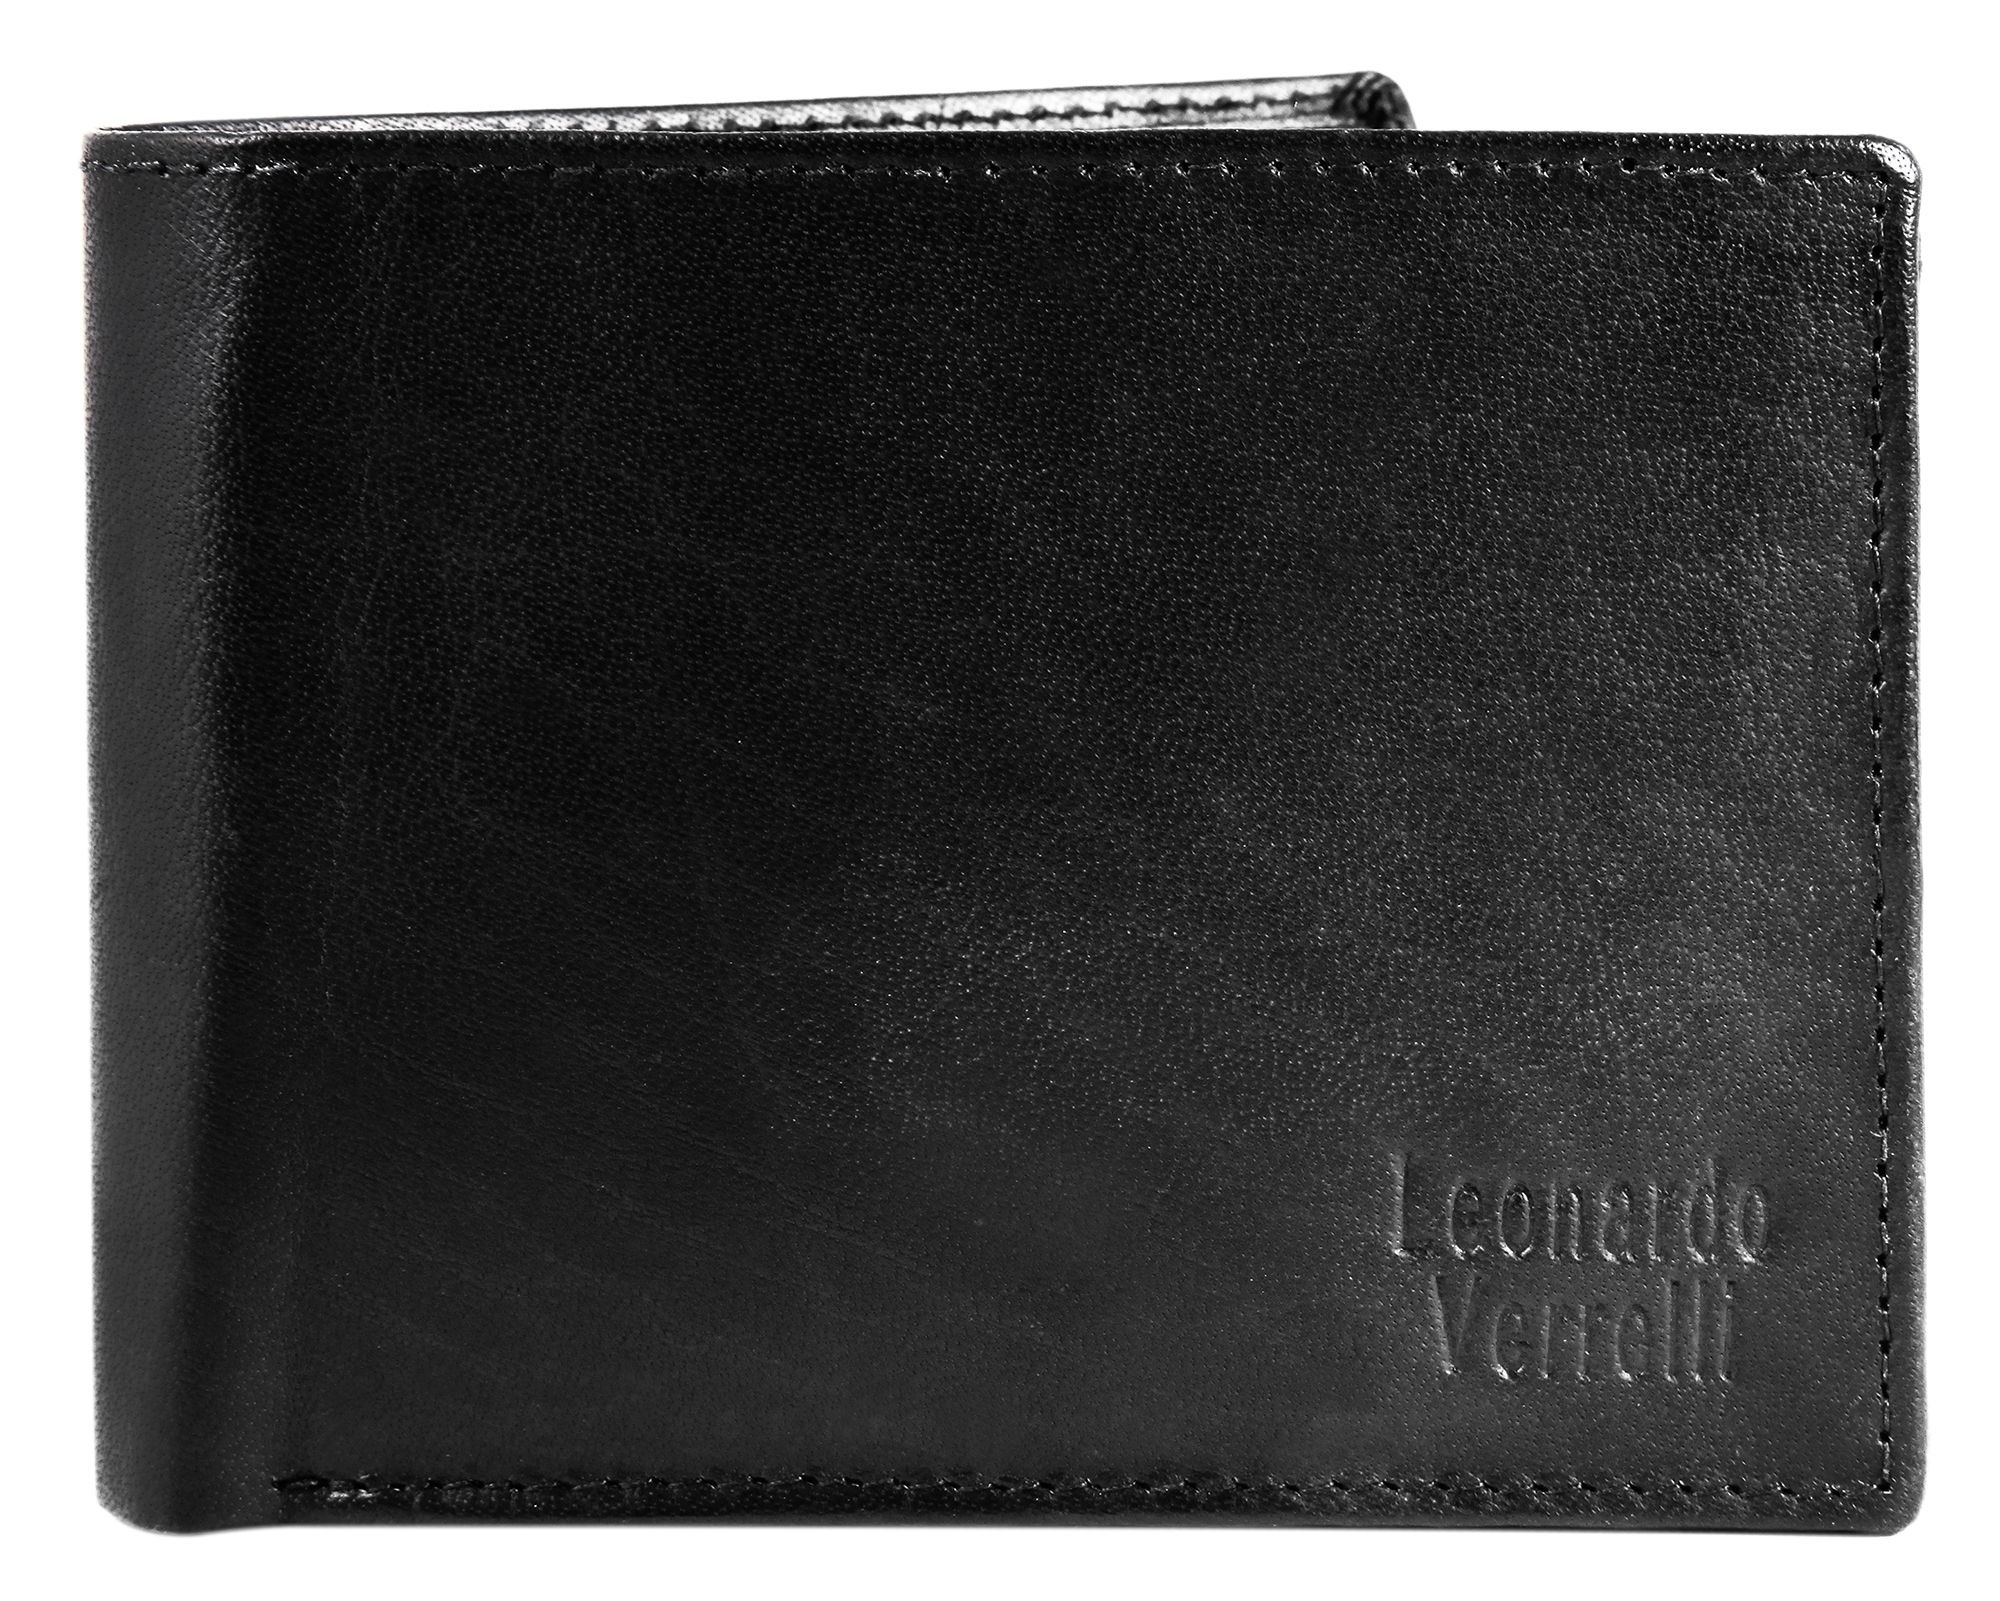 Leonardo Verrelli Herren Geldbörse Echt-Leder 12 x 9 Grau RFID X3000356002